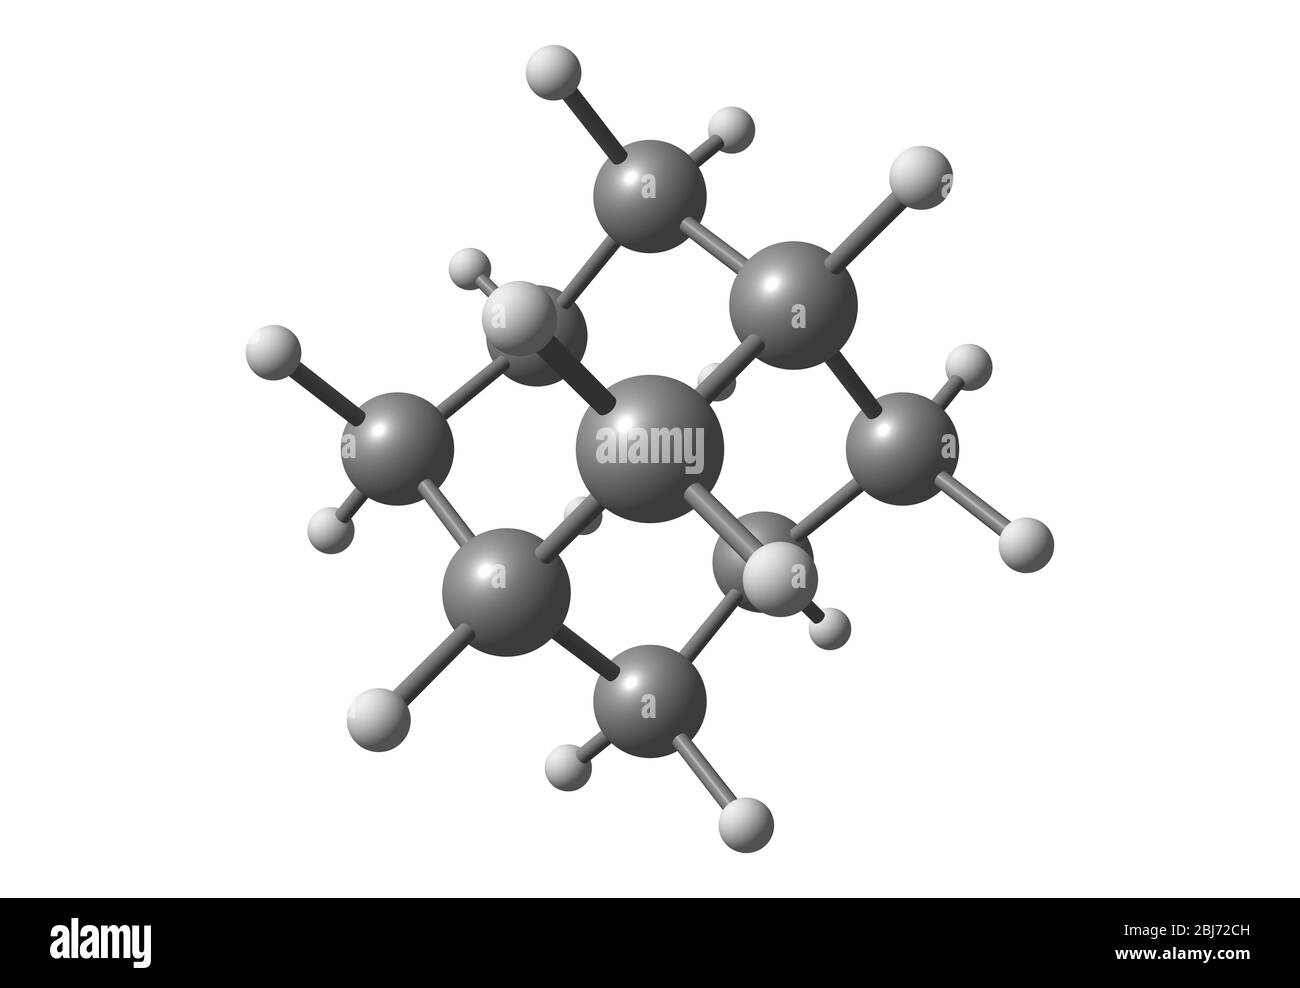 Adamantan ist eine farblose, kristalline chemische Verbindung mit einem Kampfer-ähnlichen Geruch. Stockfoto